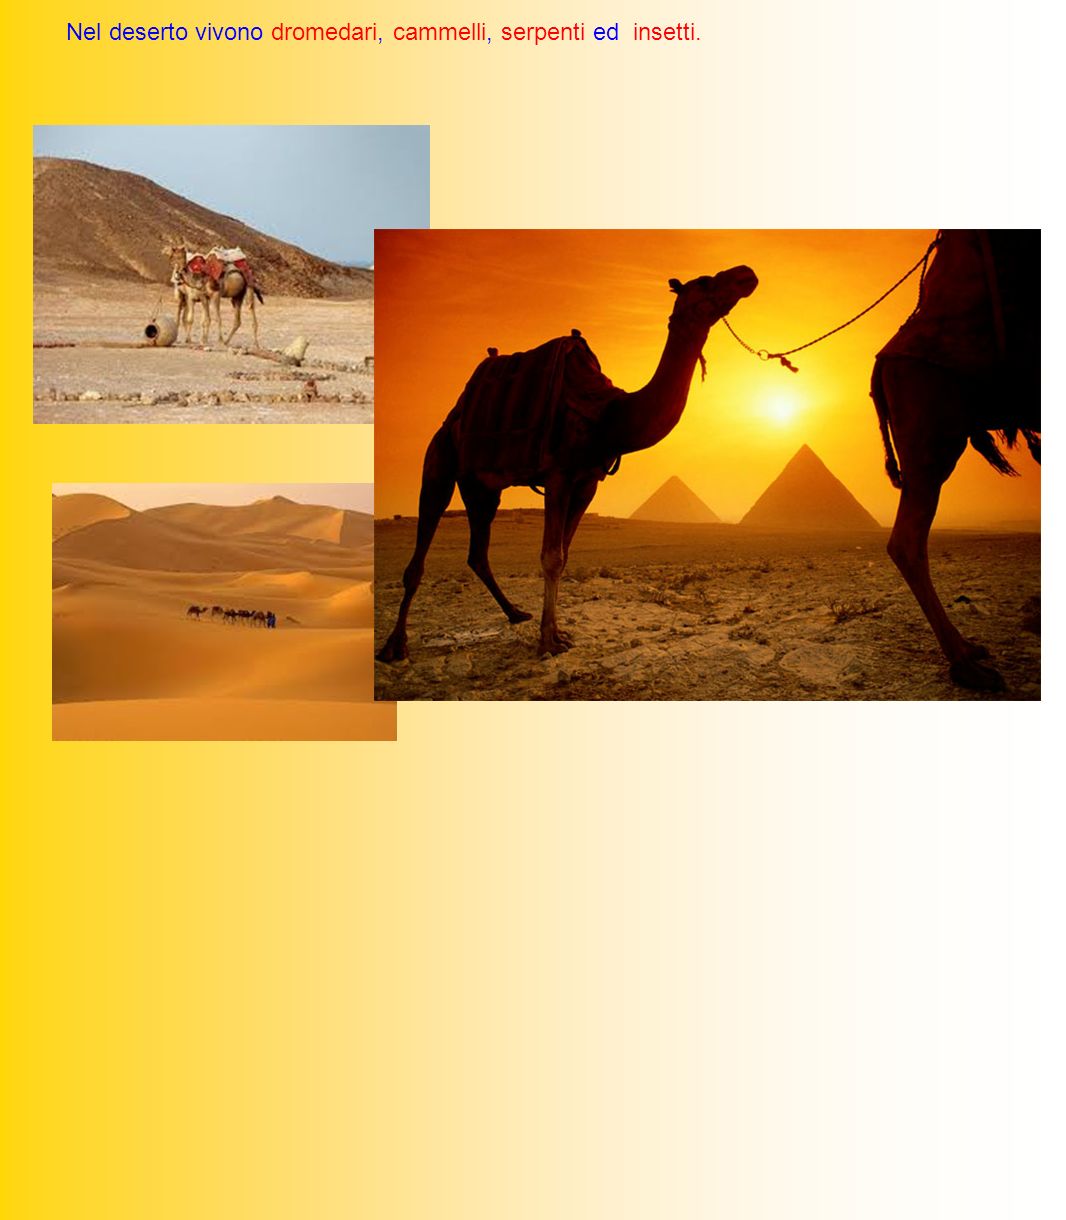 Nel deserto vivono dromedari, cammelli, serpenti ed insetti.